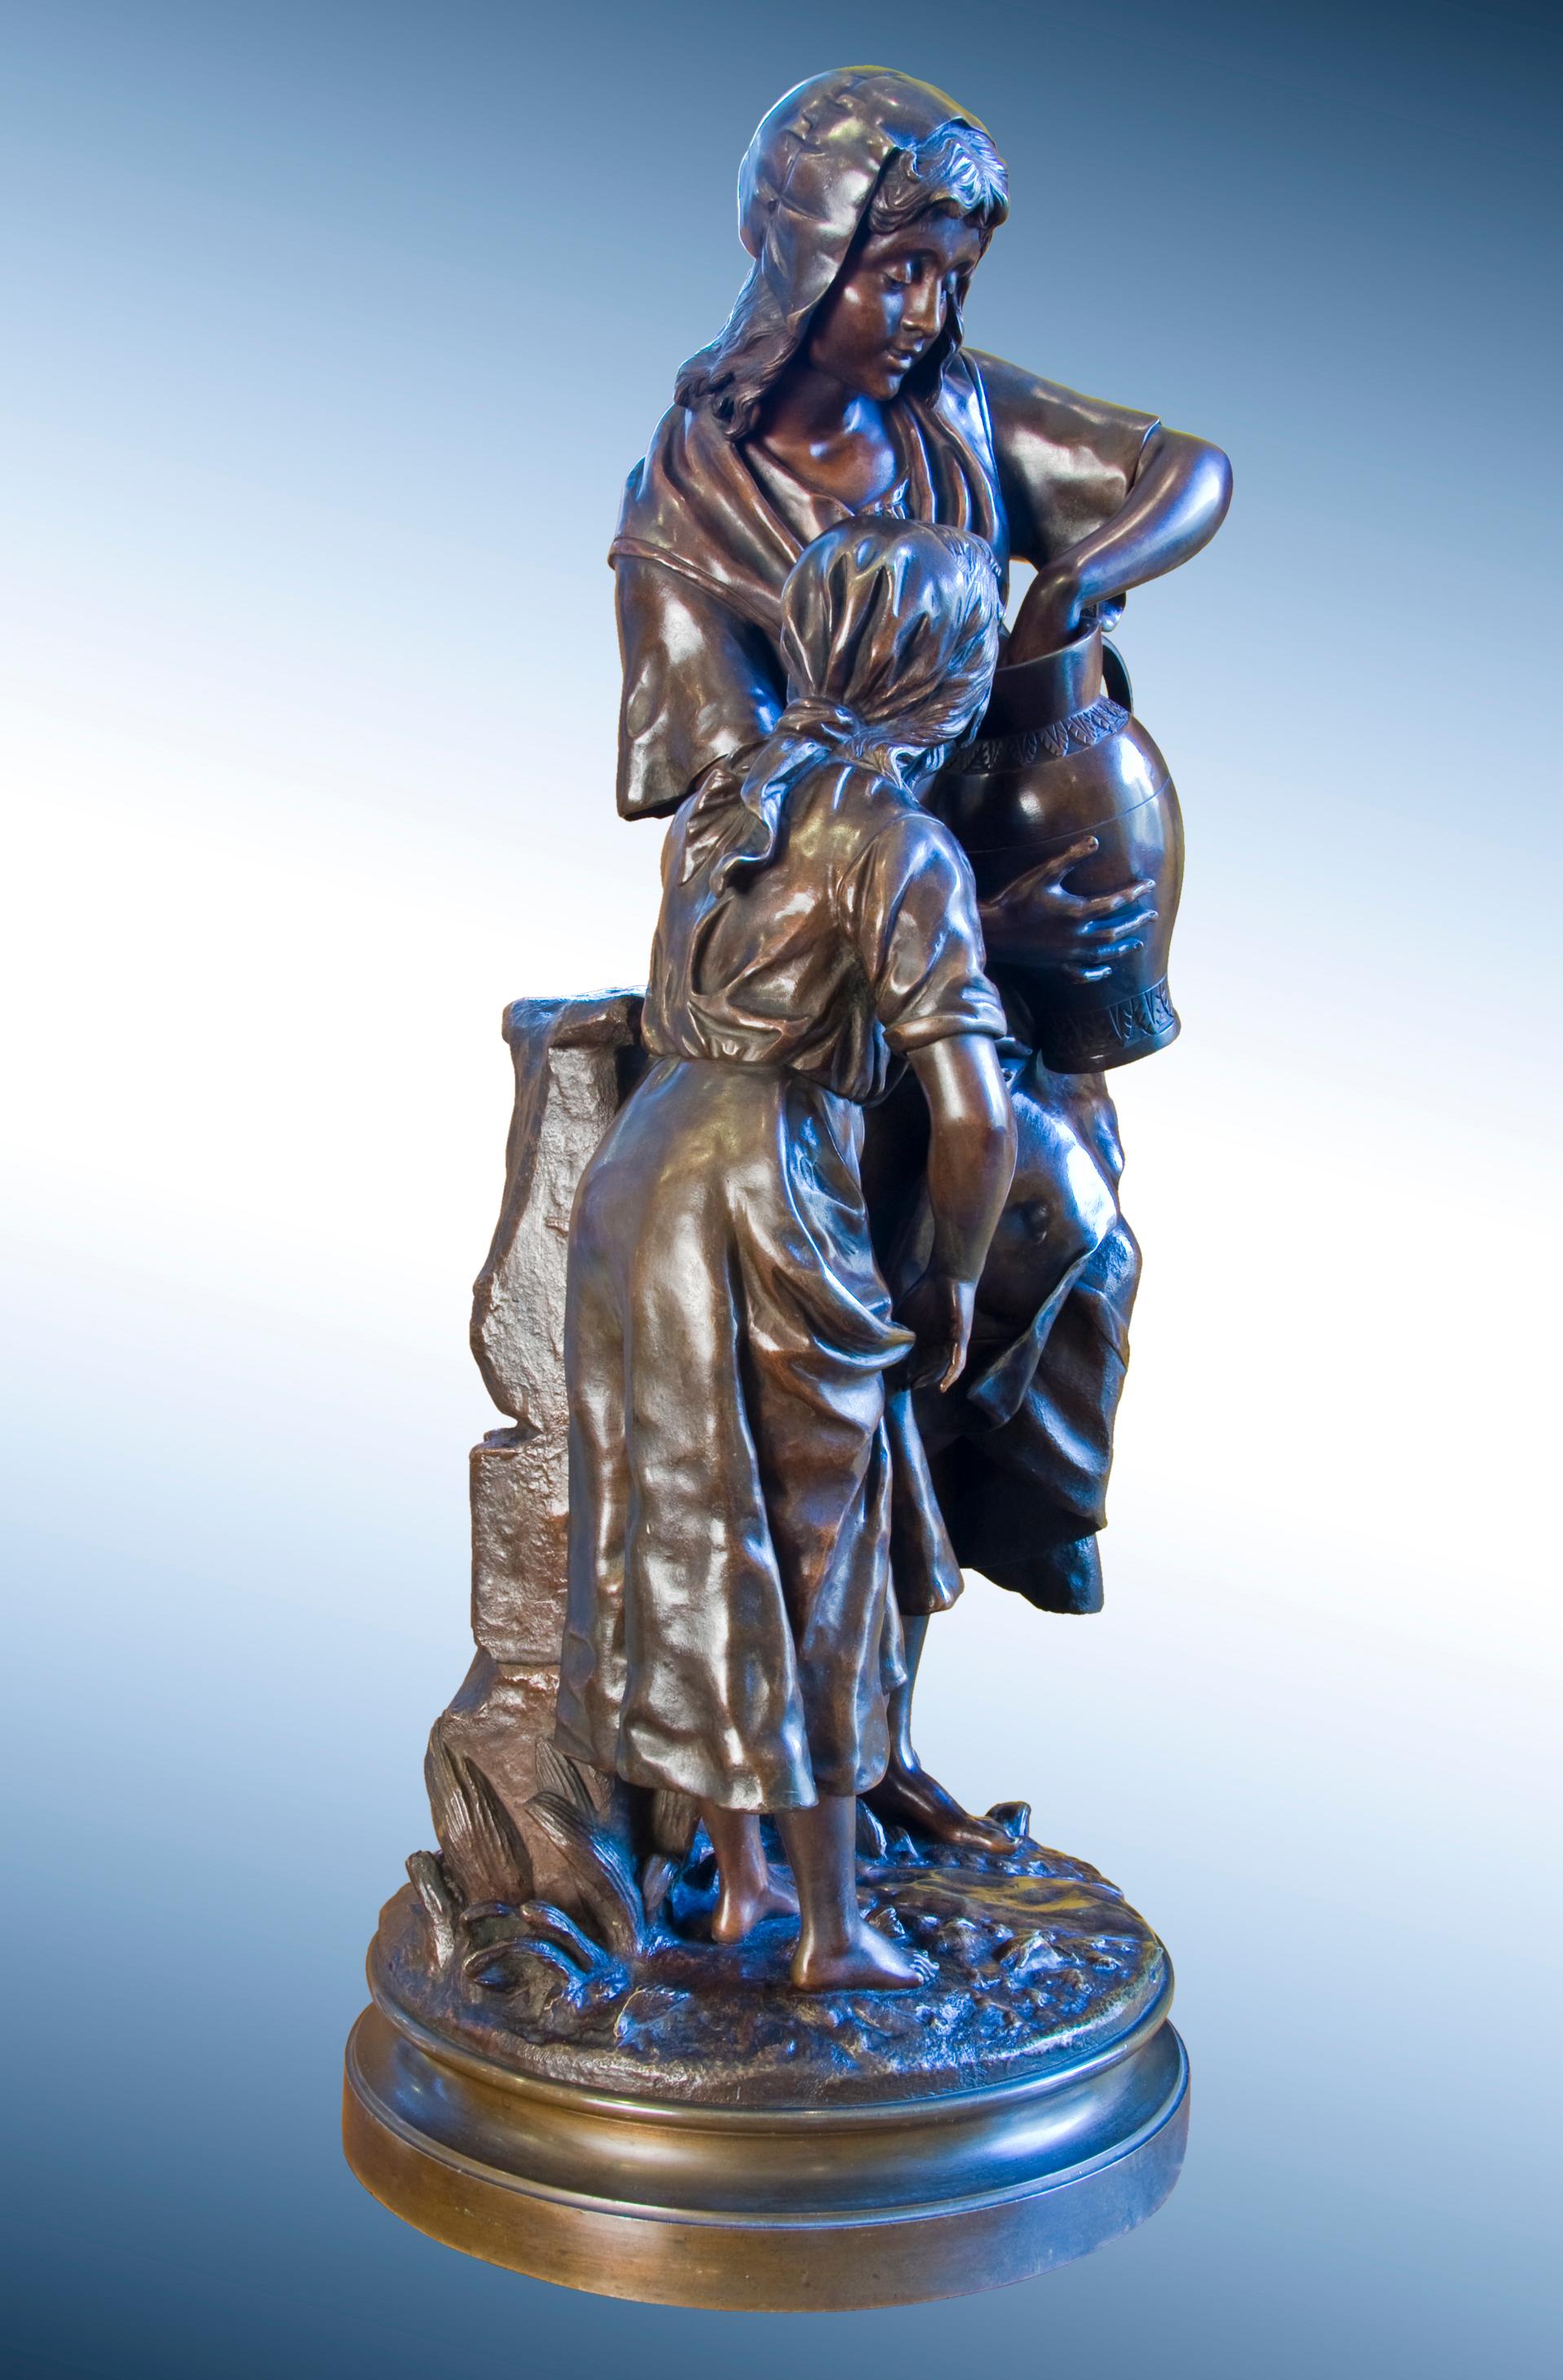 Belle fonte du XIXe siècle à la riche patine brune, réalisée par le sculpteur français Emile-Joseph-Nestor Carlier. Carlier a souvent créé de grandes sculptures de groupe multifigurales. Il s'agit de sculptures spectaculaires et très nombreuses.  